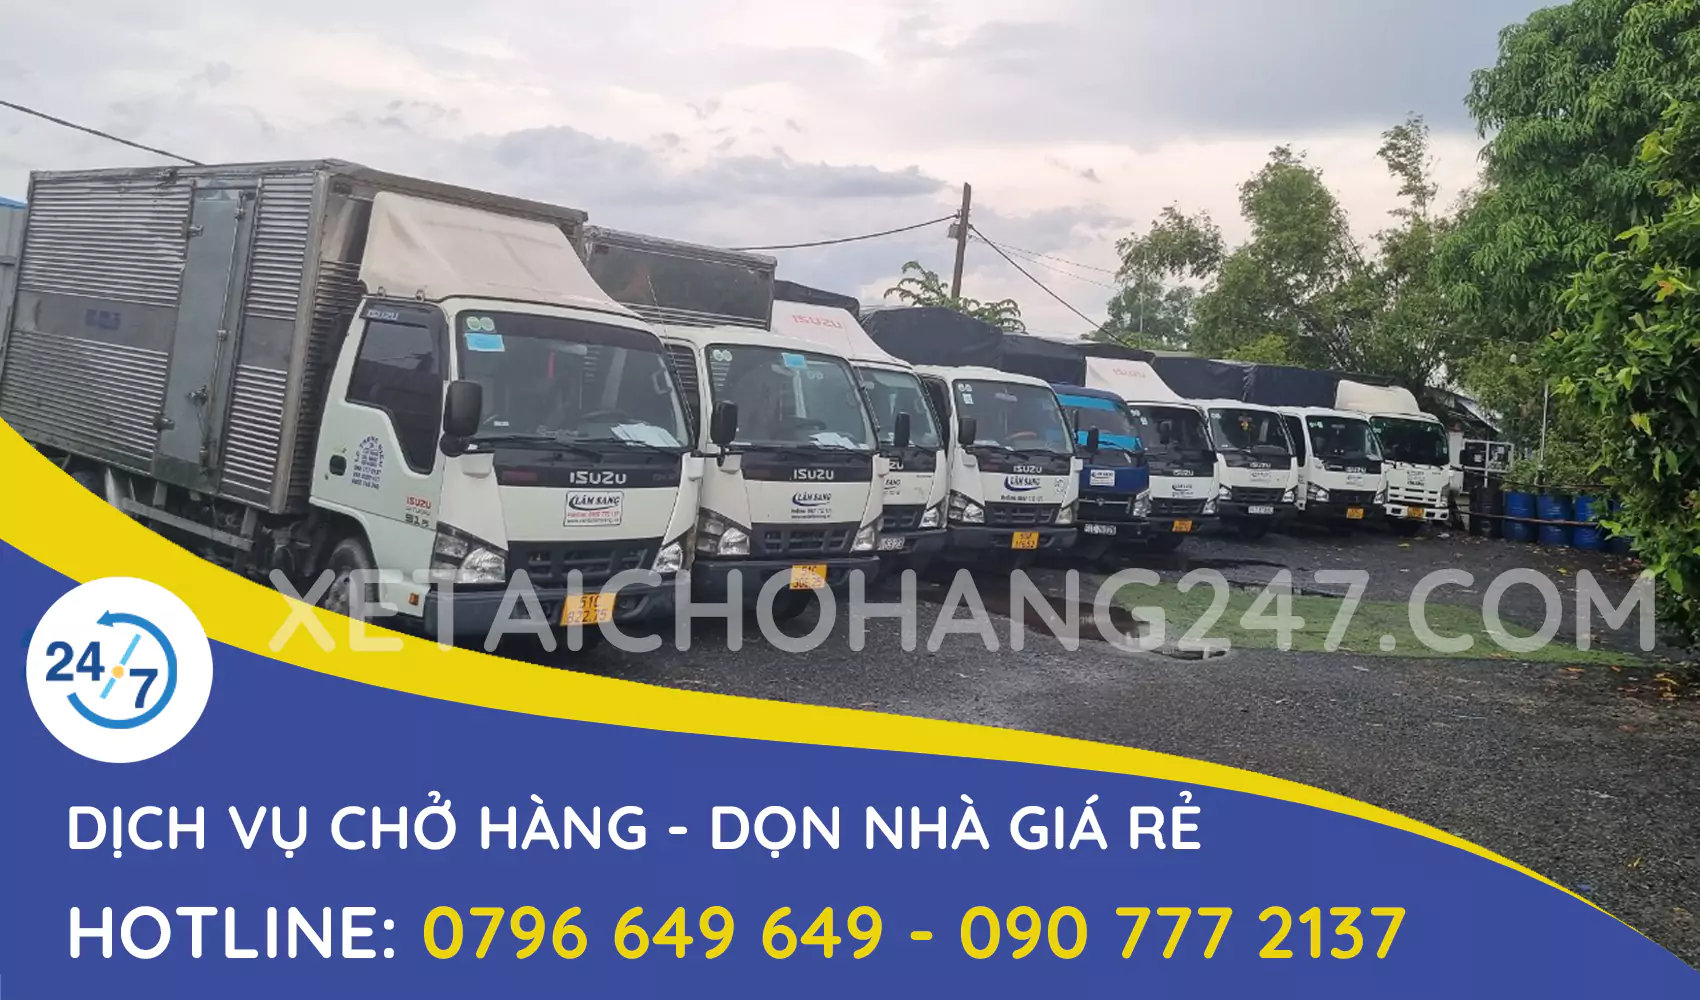 Dịch vụ xe tải chở hàng thuê giá rẻ tại tphcm